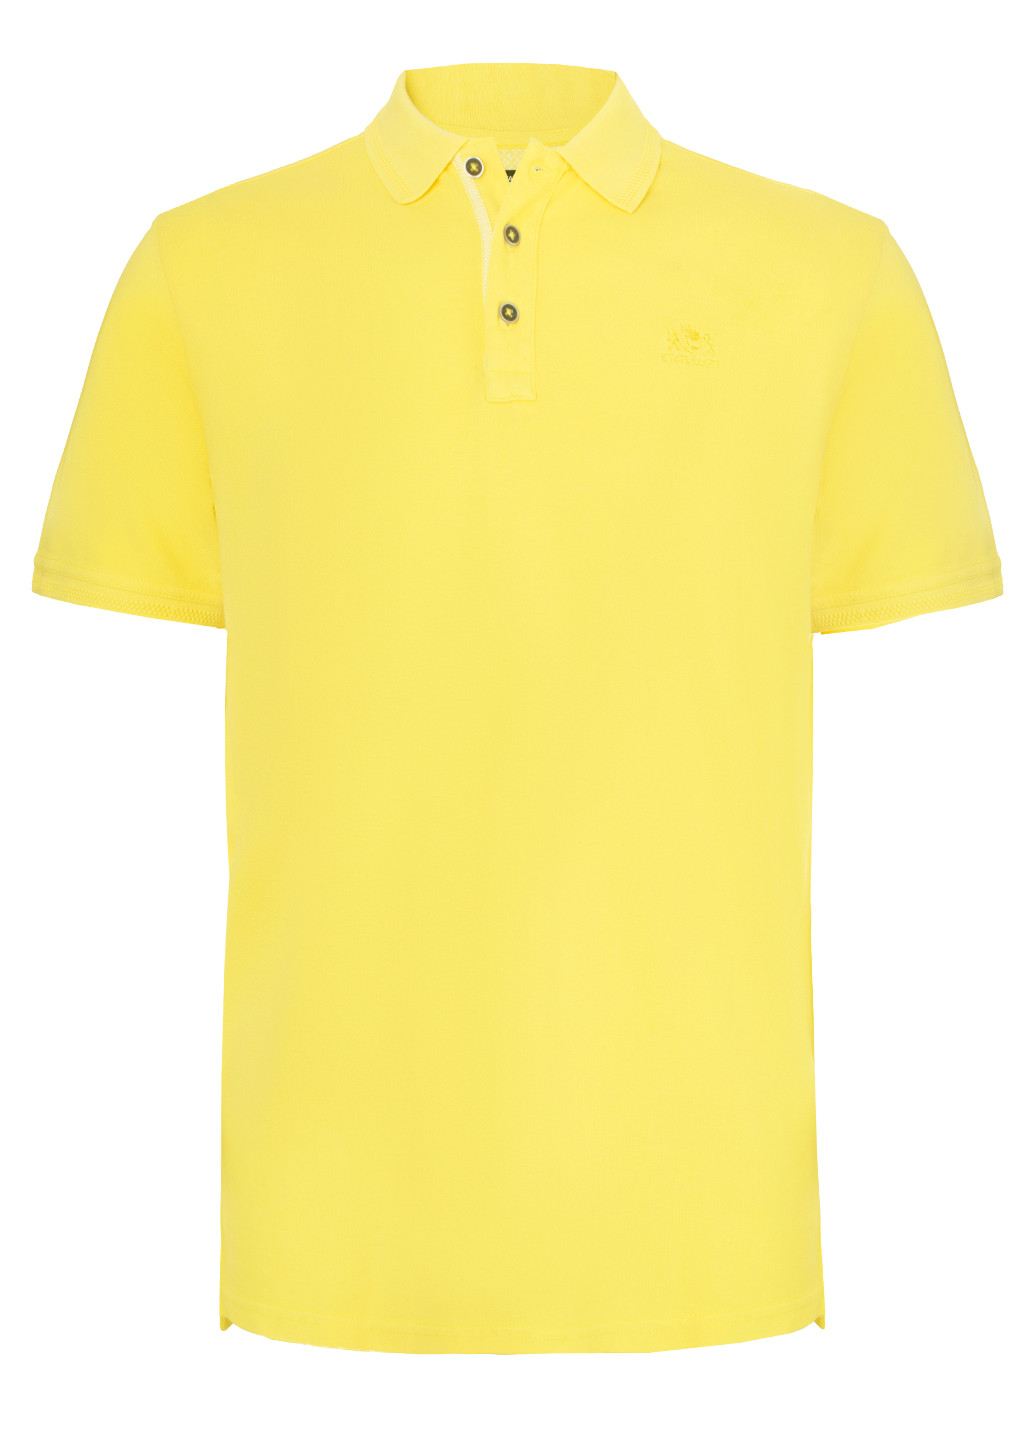 Желтая футболка-мужская футболка-поло с логотипом для мужчин State of Art однотонная